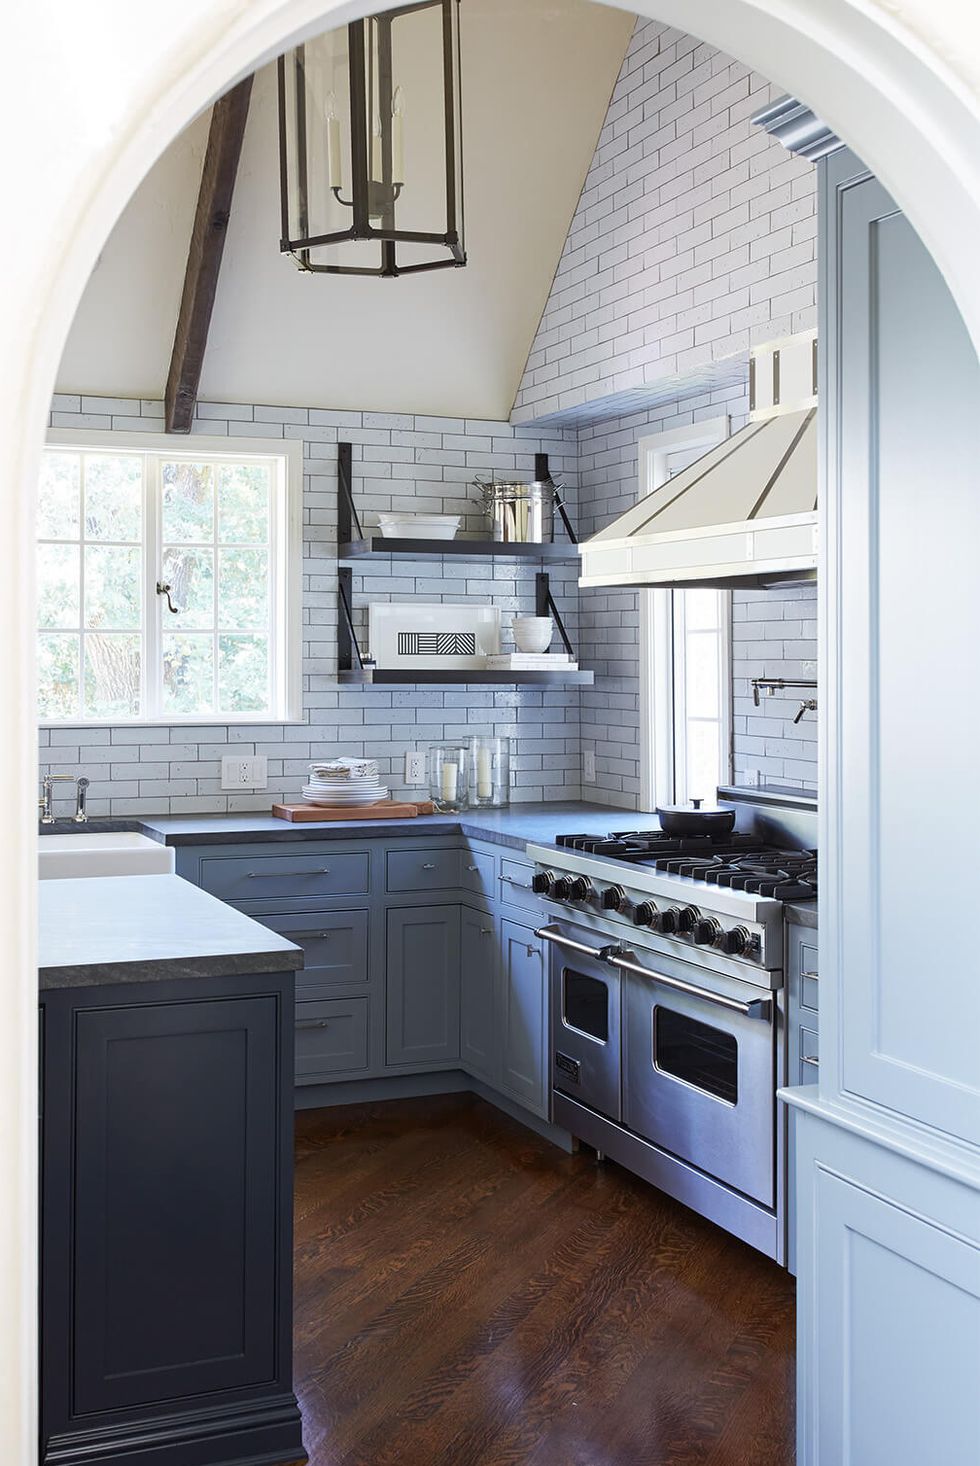 hình ảnh phòng bếp với tủ bếp màu xám thép, bàn đảo màu xám hải quân đậm, trần màu be, sàn lát gỗ